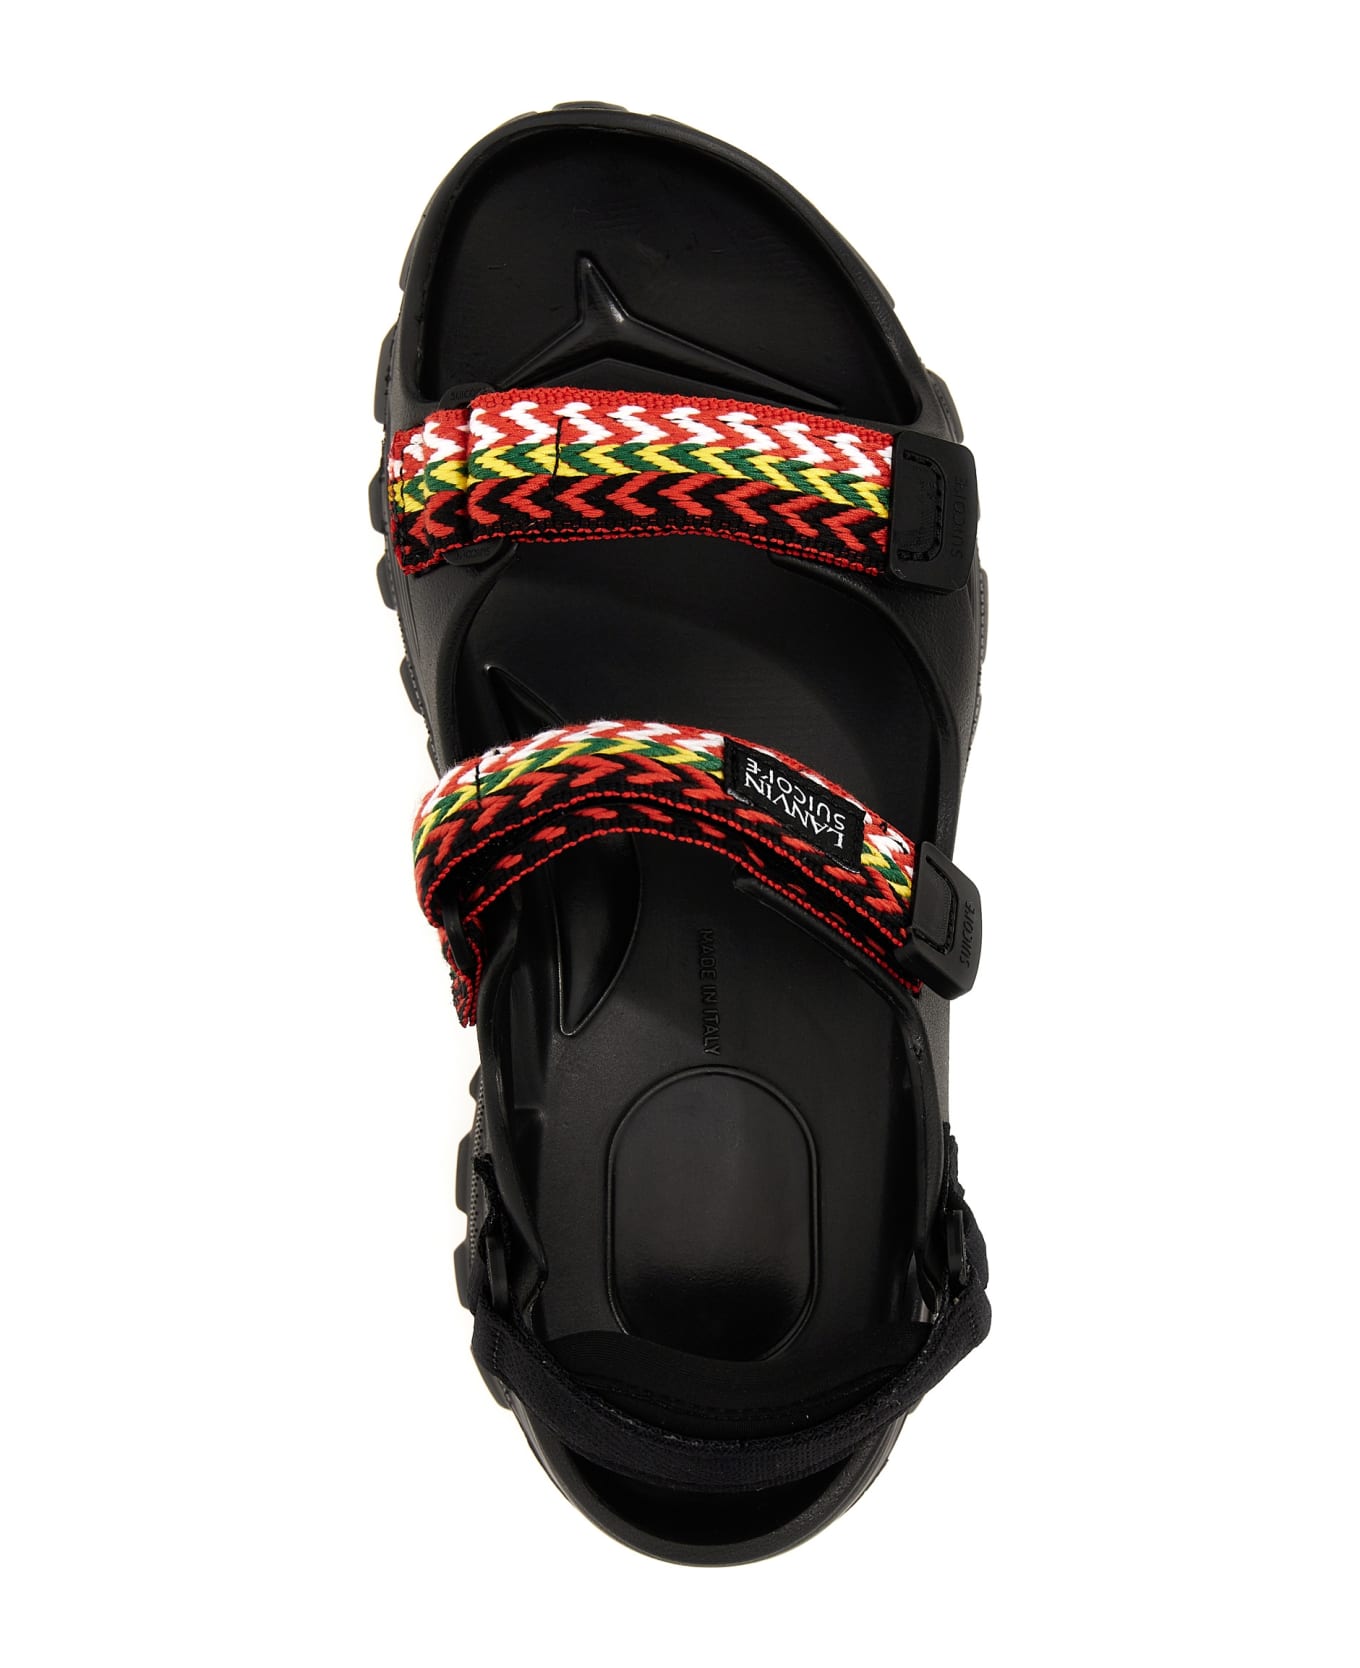 Lanvin 'wave Curb Laces' Lanvin X Suicoke Sandals - Black